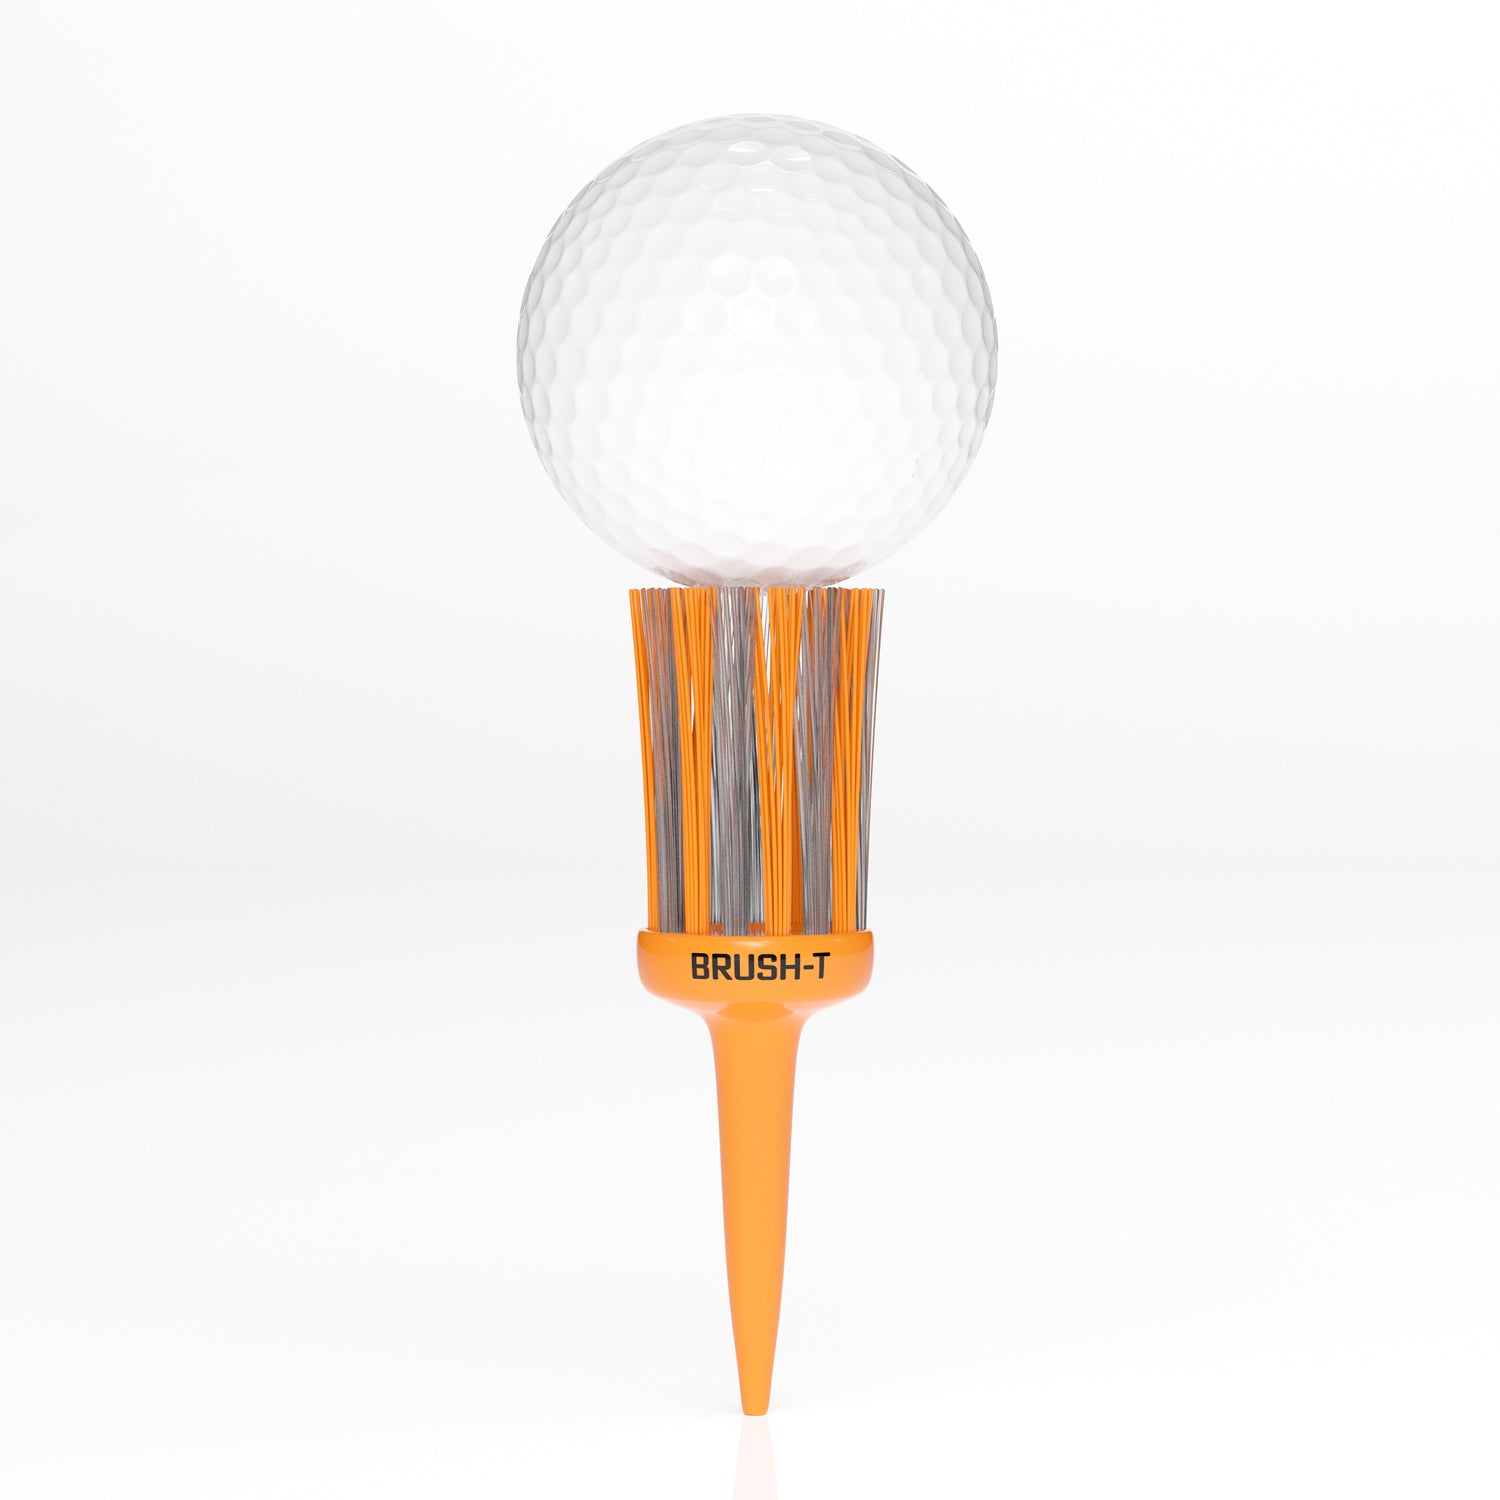 Pro Combo 4 Pack, Premium Plastic Golf Tees